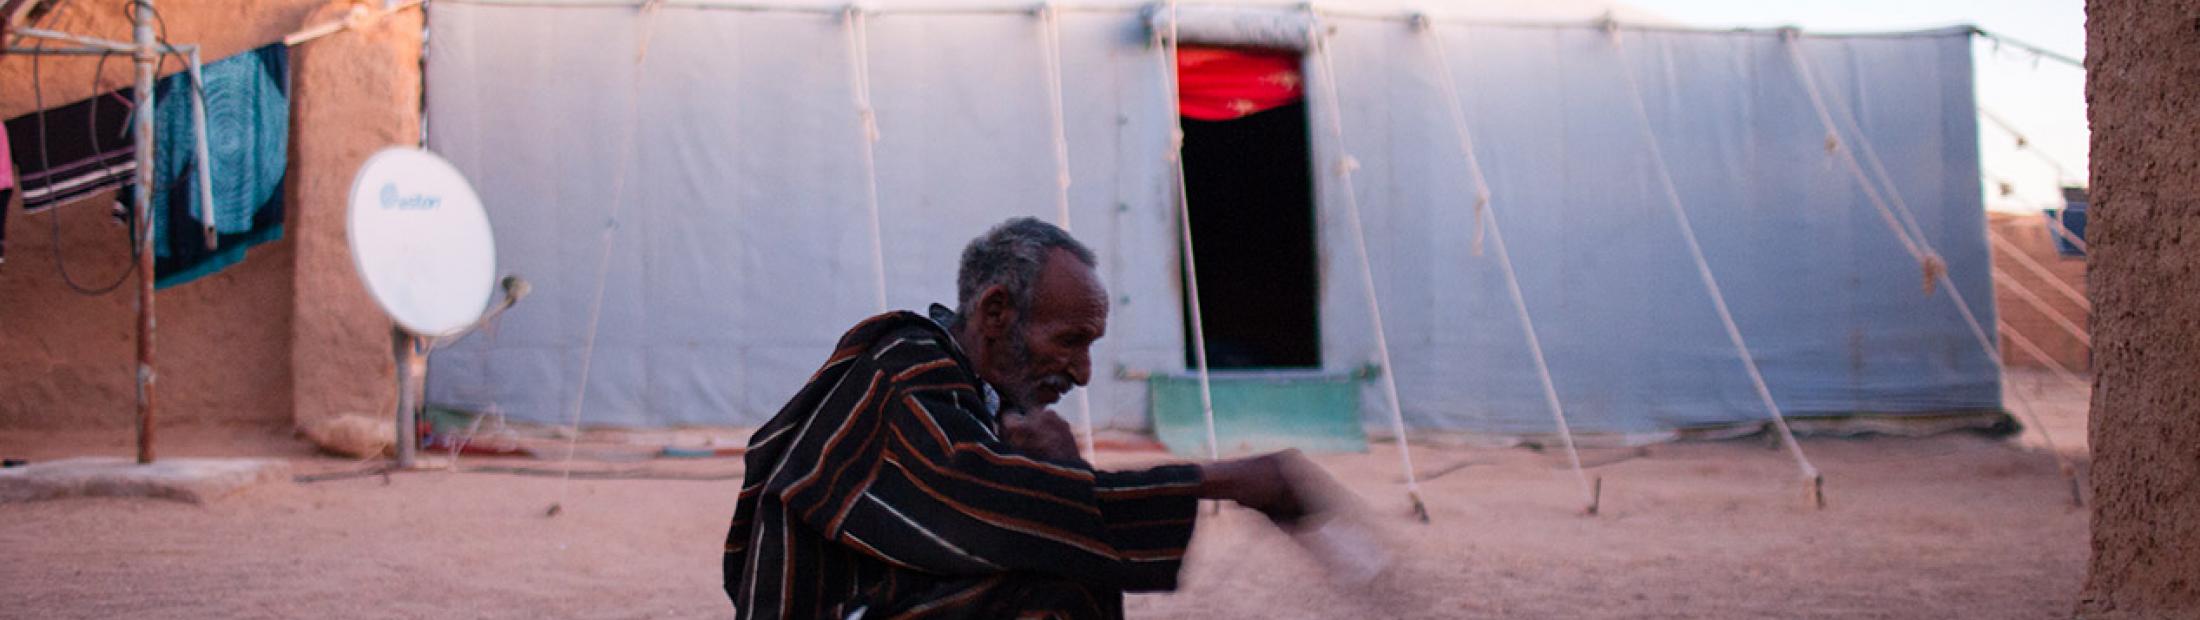 Saharauis, más de 40 años en el exilio